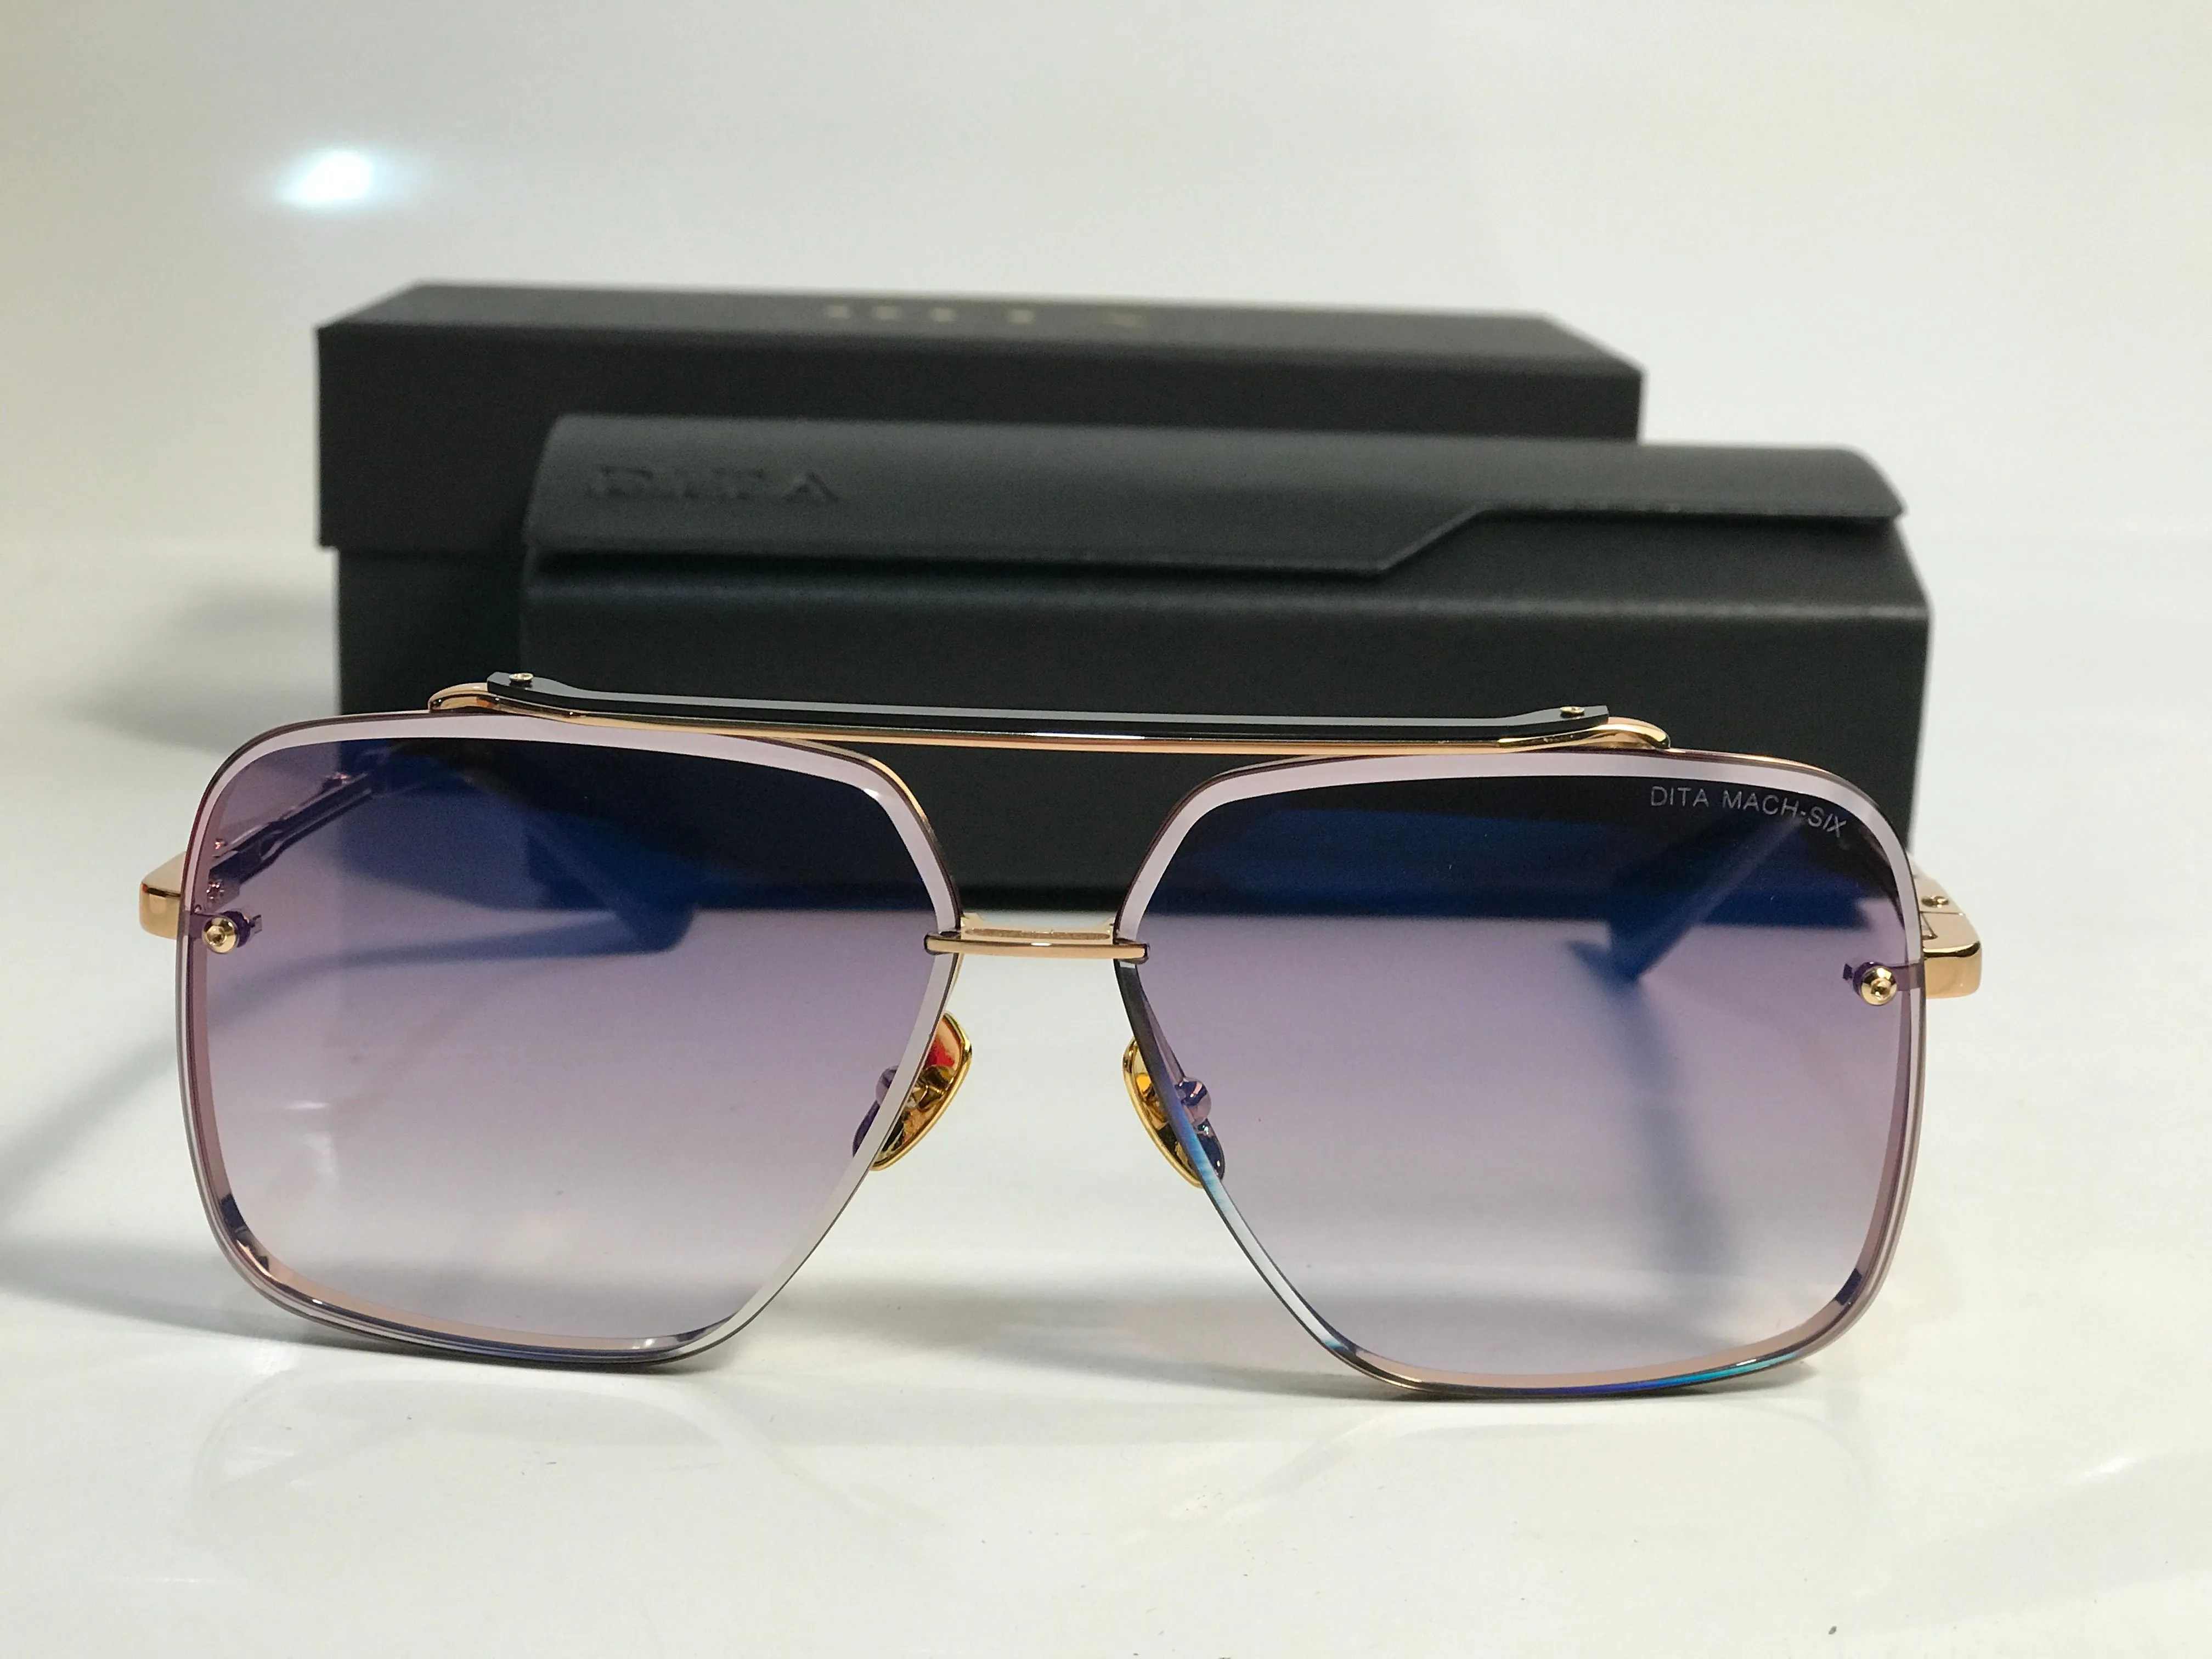 Mach sex designer solglasögon för kvinnor mens anti-ultraviolet retro fyrkantig metallplankplank ram dt mode överdimensionerade solglasögon eyeglasse